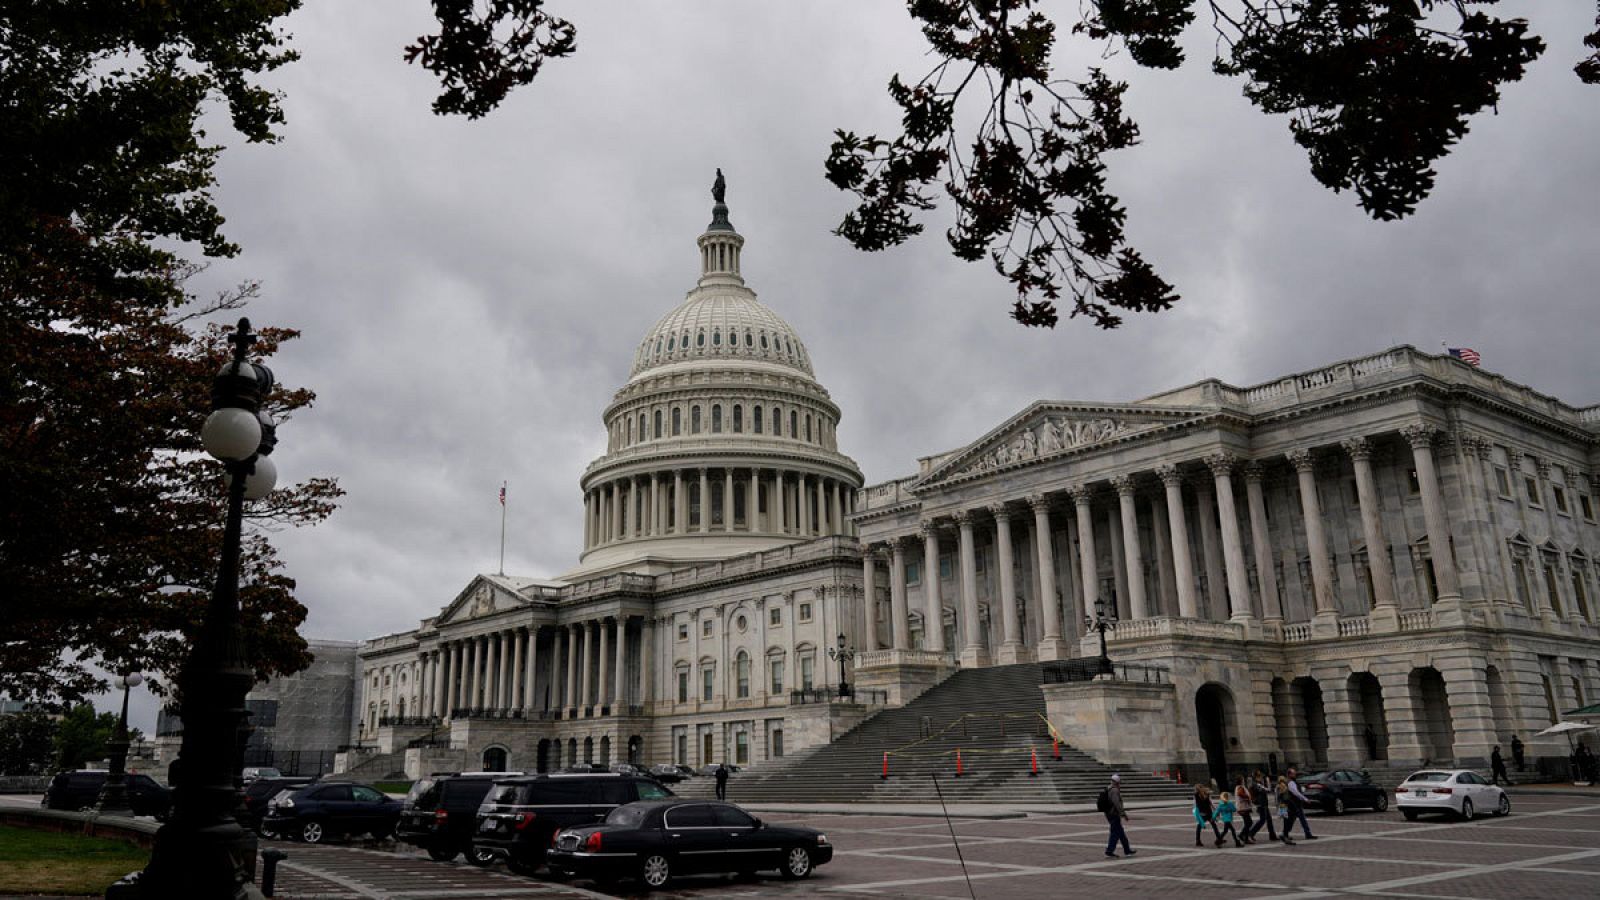 Imagen del Capitolio de los Estados Unidos, situado en Washington D.C.